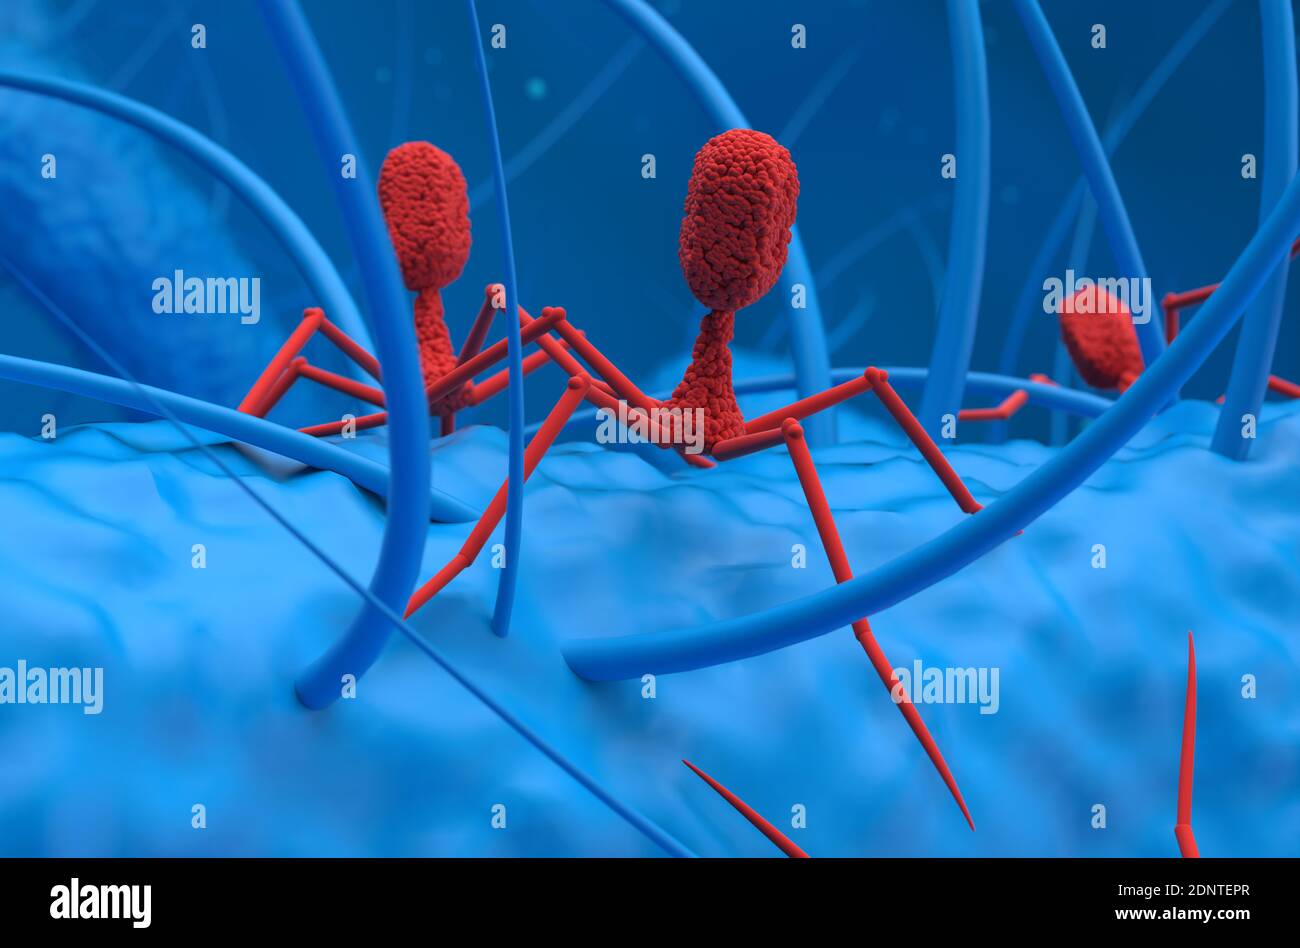 Bakteriophagen Viren greifen Bakterien an 3d Rendering Illustration Stockfoto